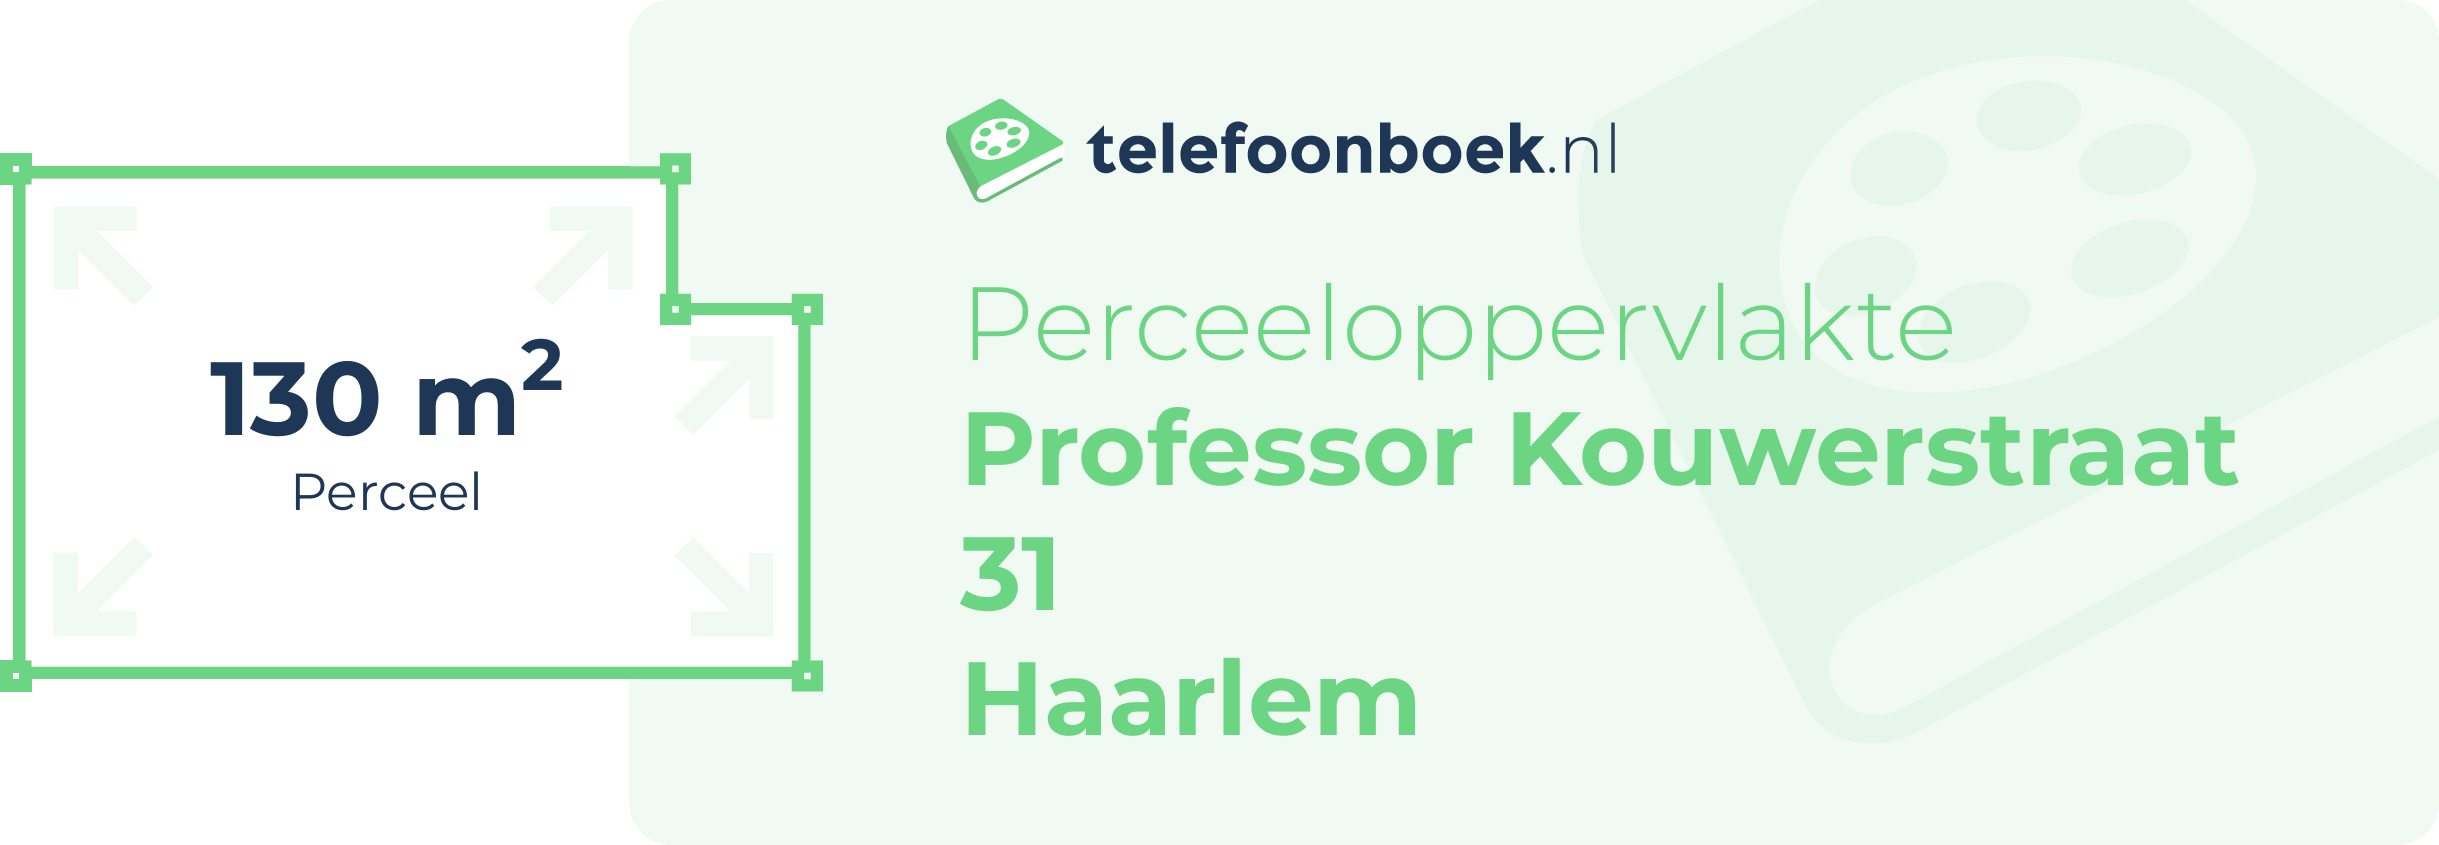 Perceeloppervlakte Professor Kouwerstraat 31 Haarlem